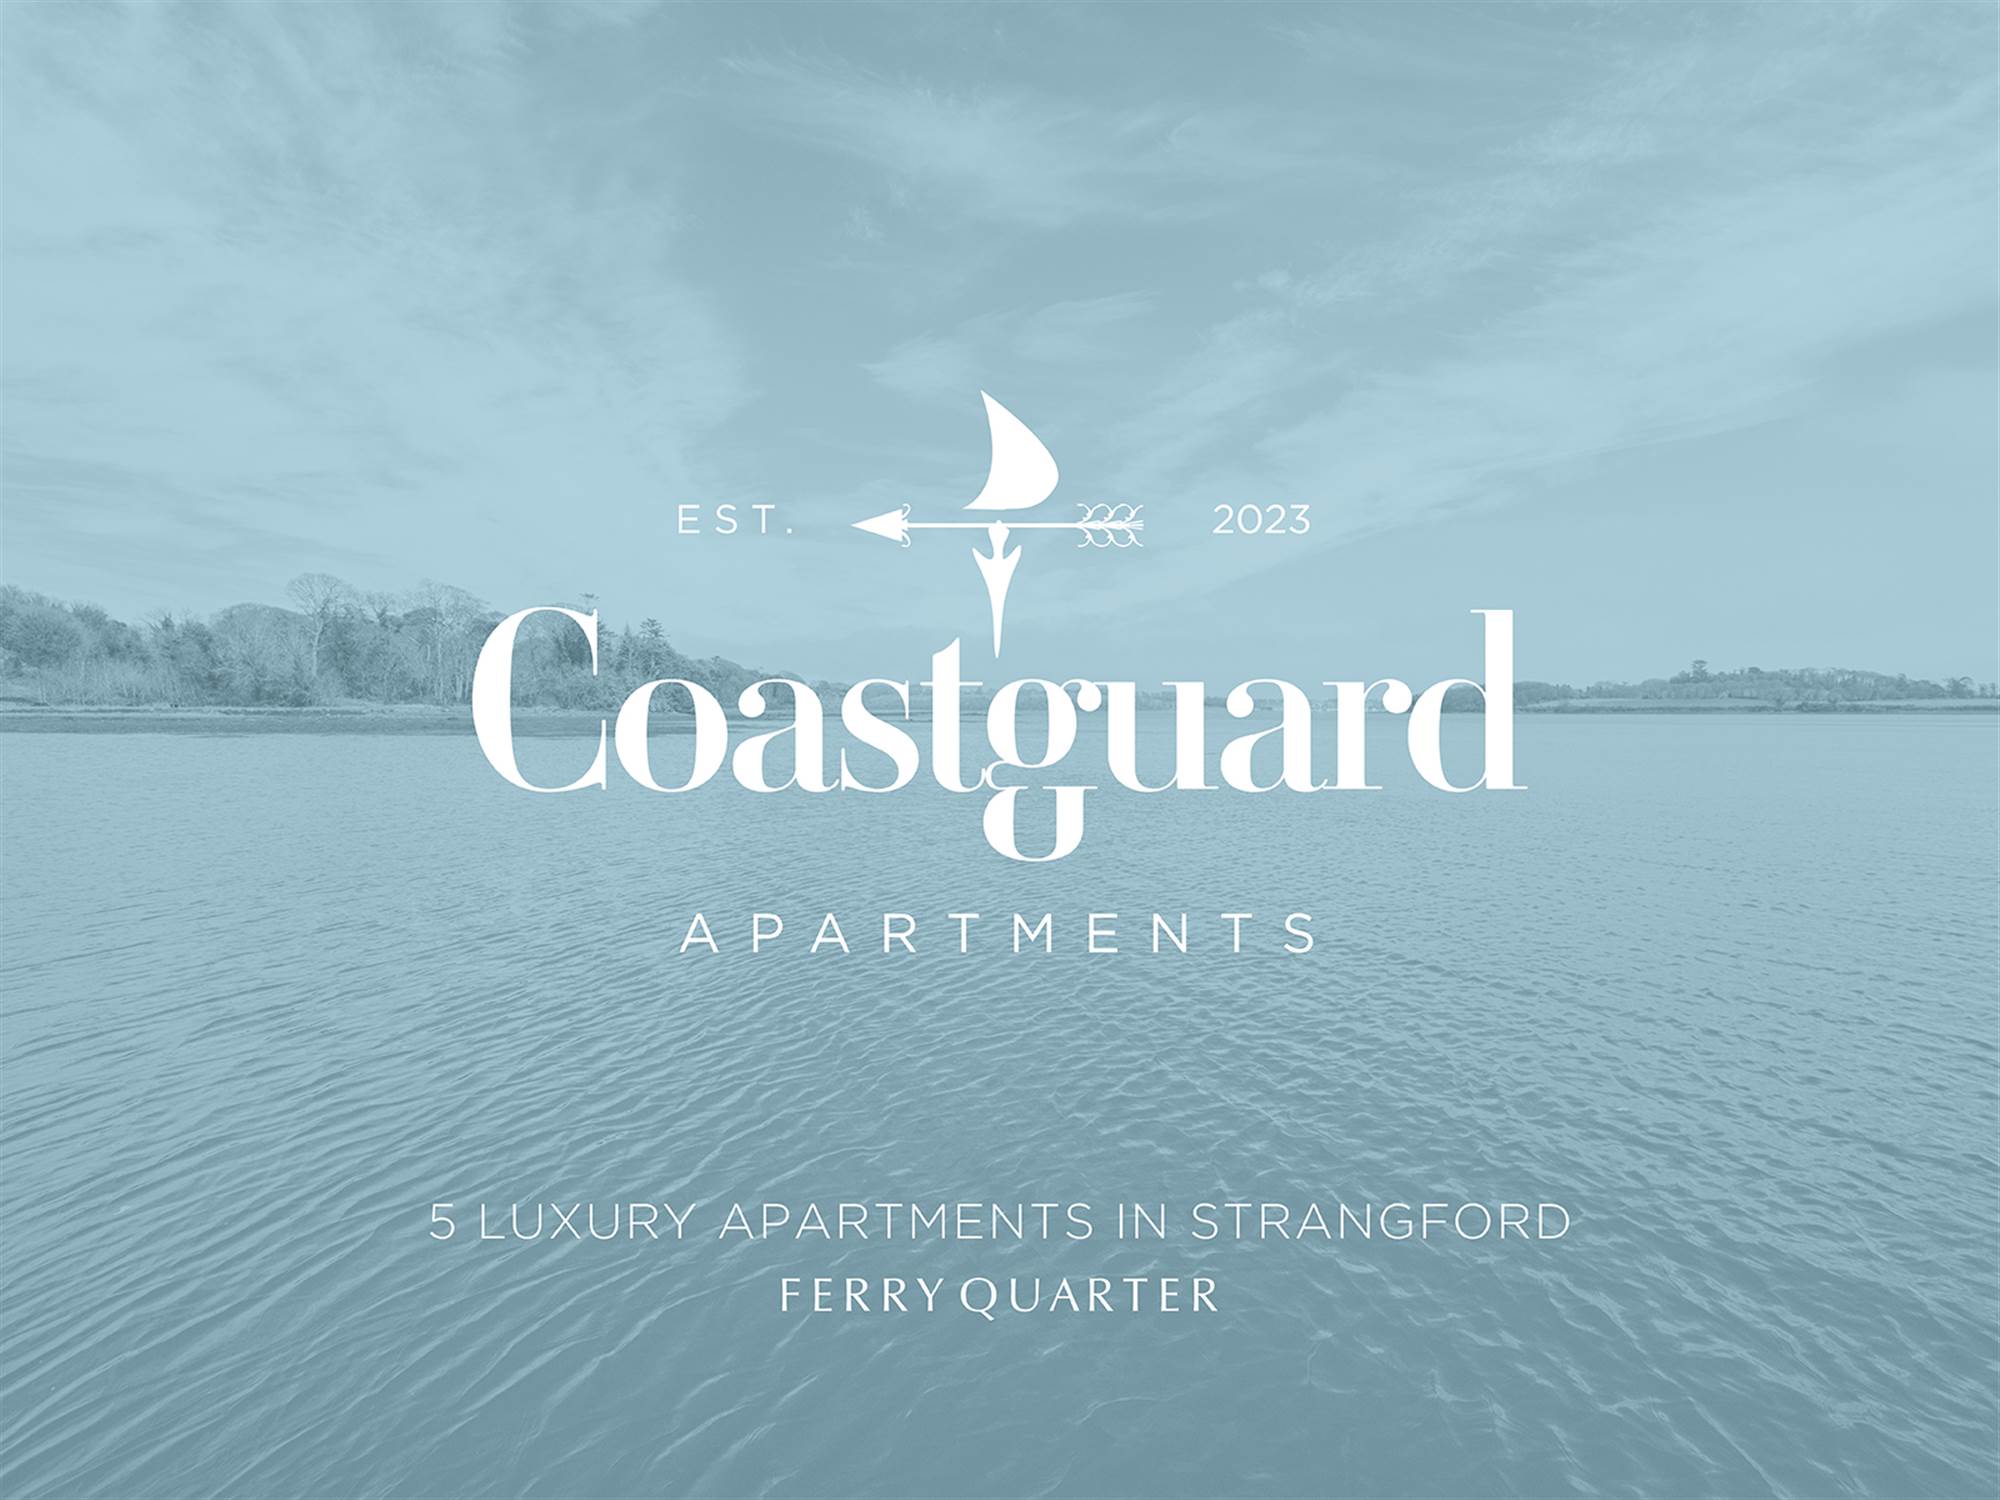 1 Coastguard Apartments